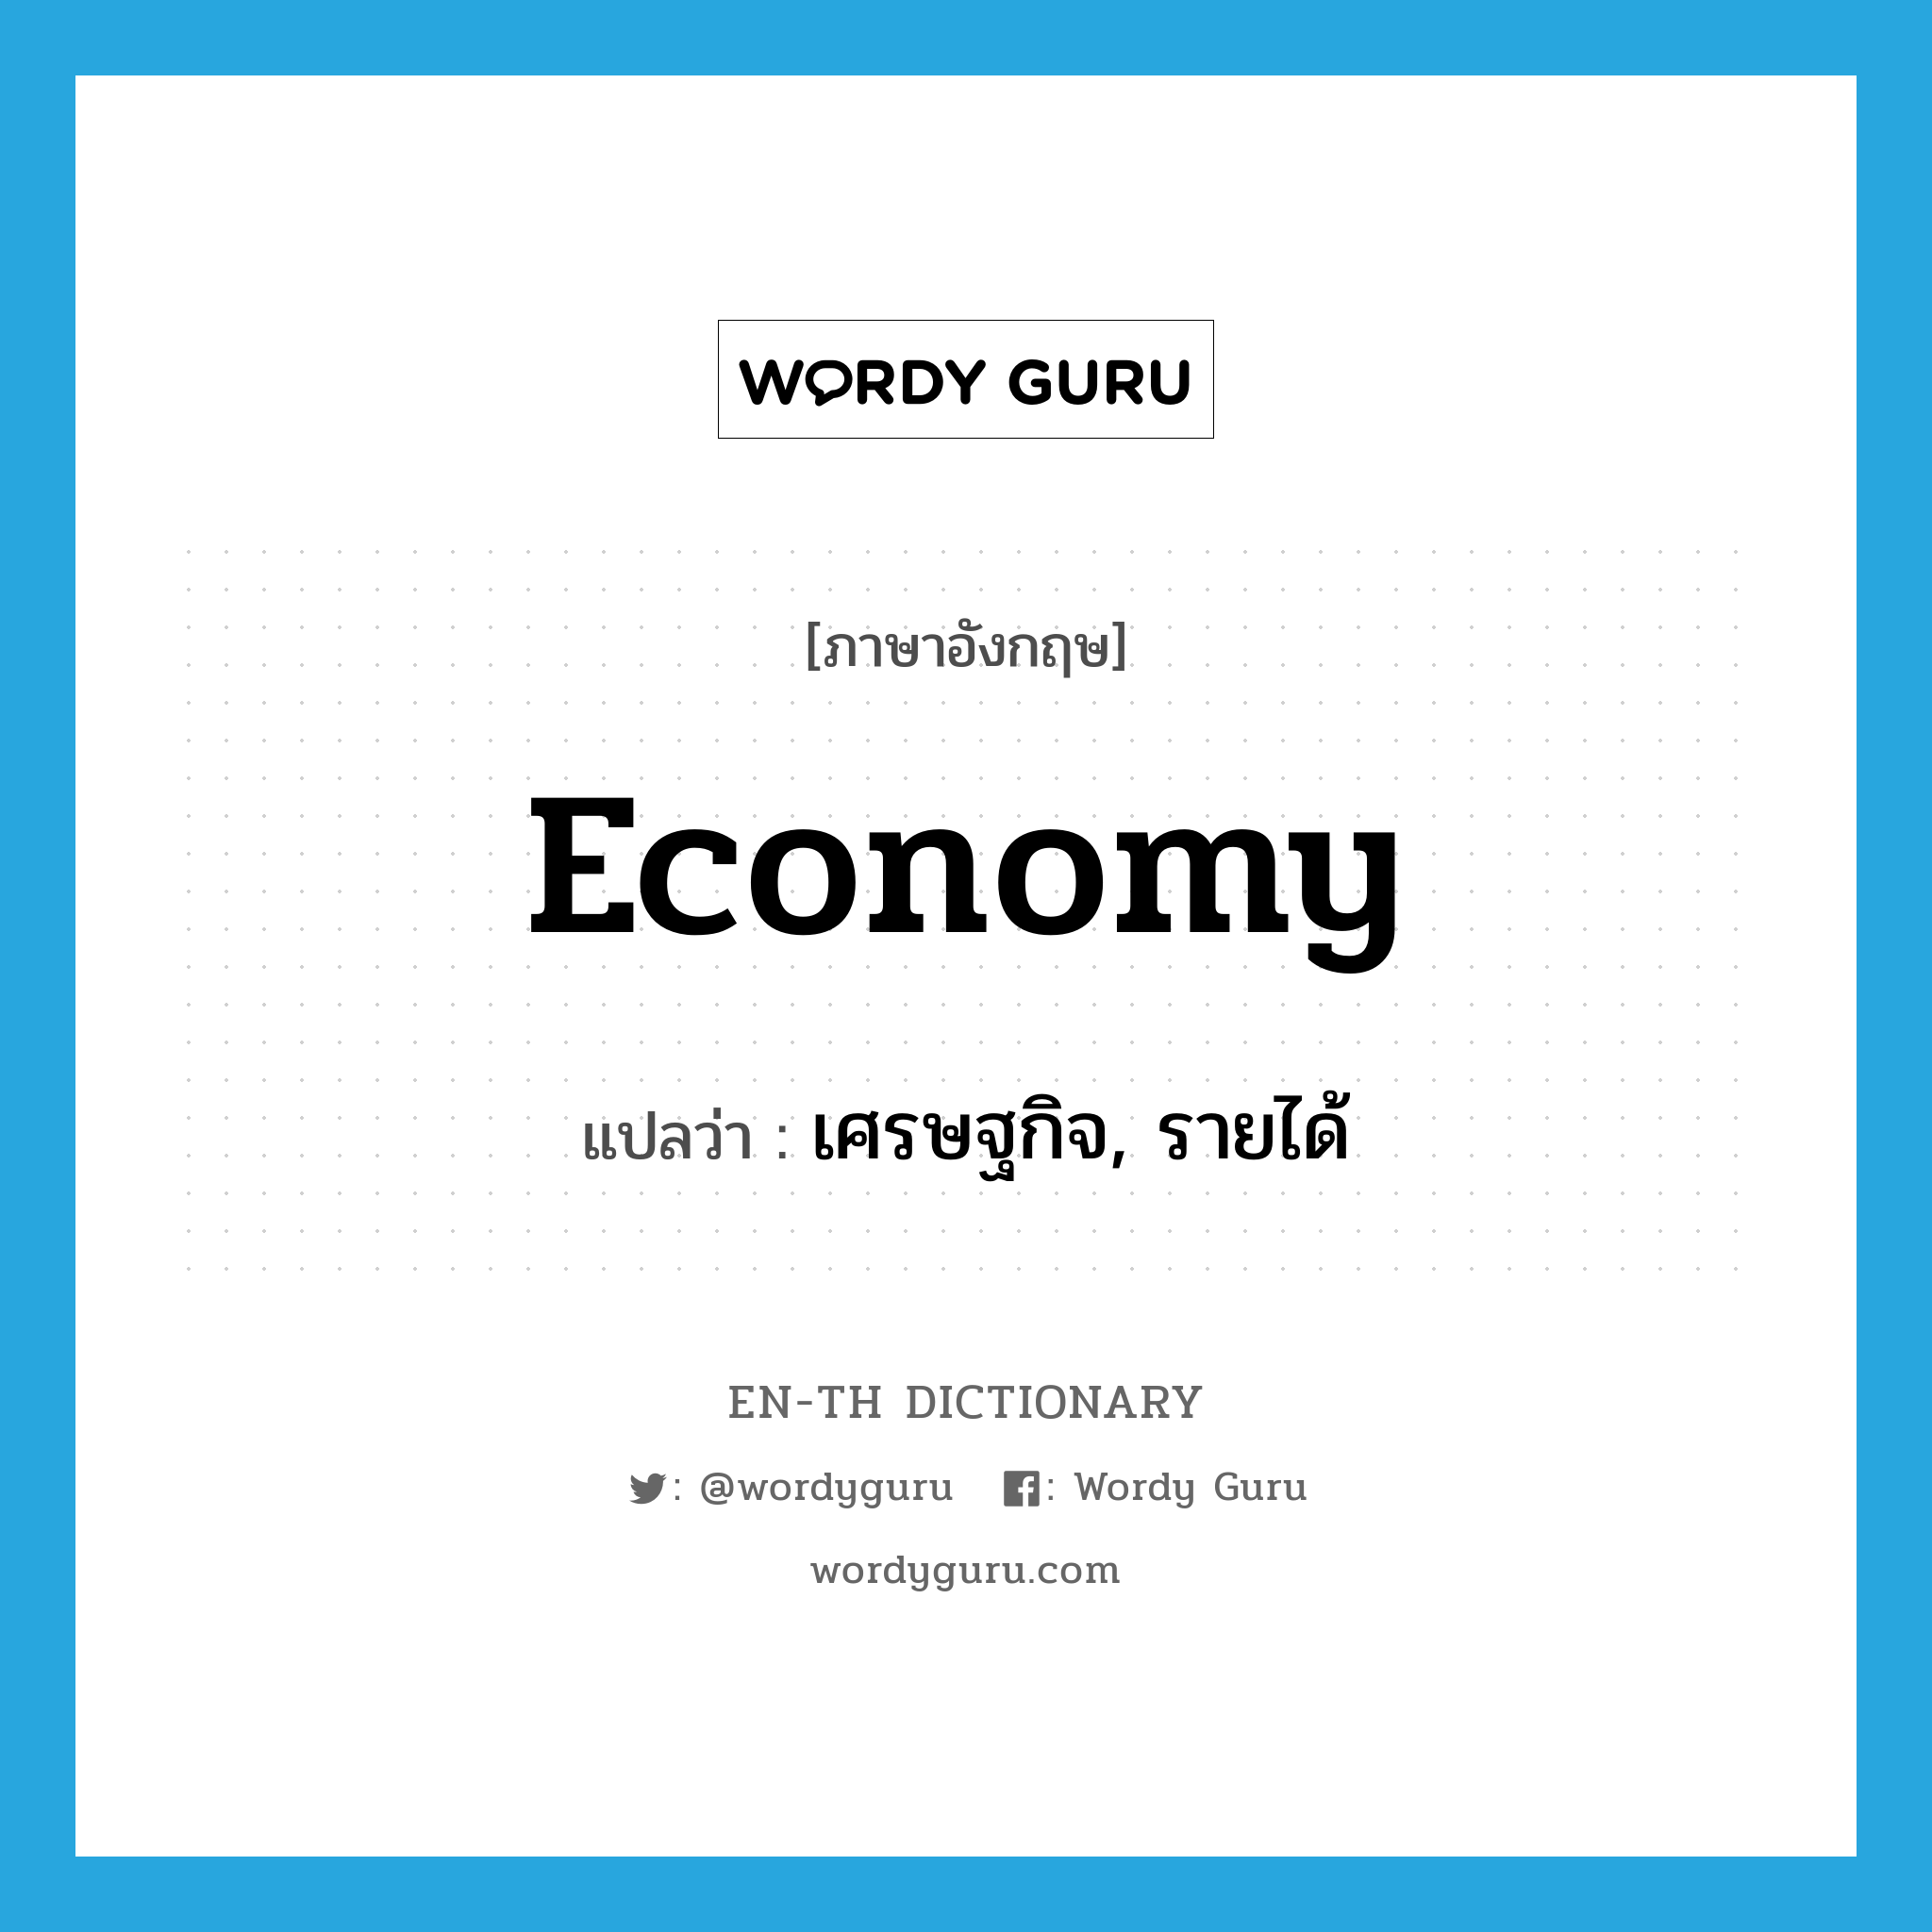 เศรษฐกิจ, รายได้ ภาษาอังกฤษ?, คำศัพท์ภาษาอังกฤษ เศรษฐกิจ, รายได้ แปลว่า economy ประเภท N หมวด N